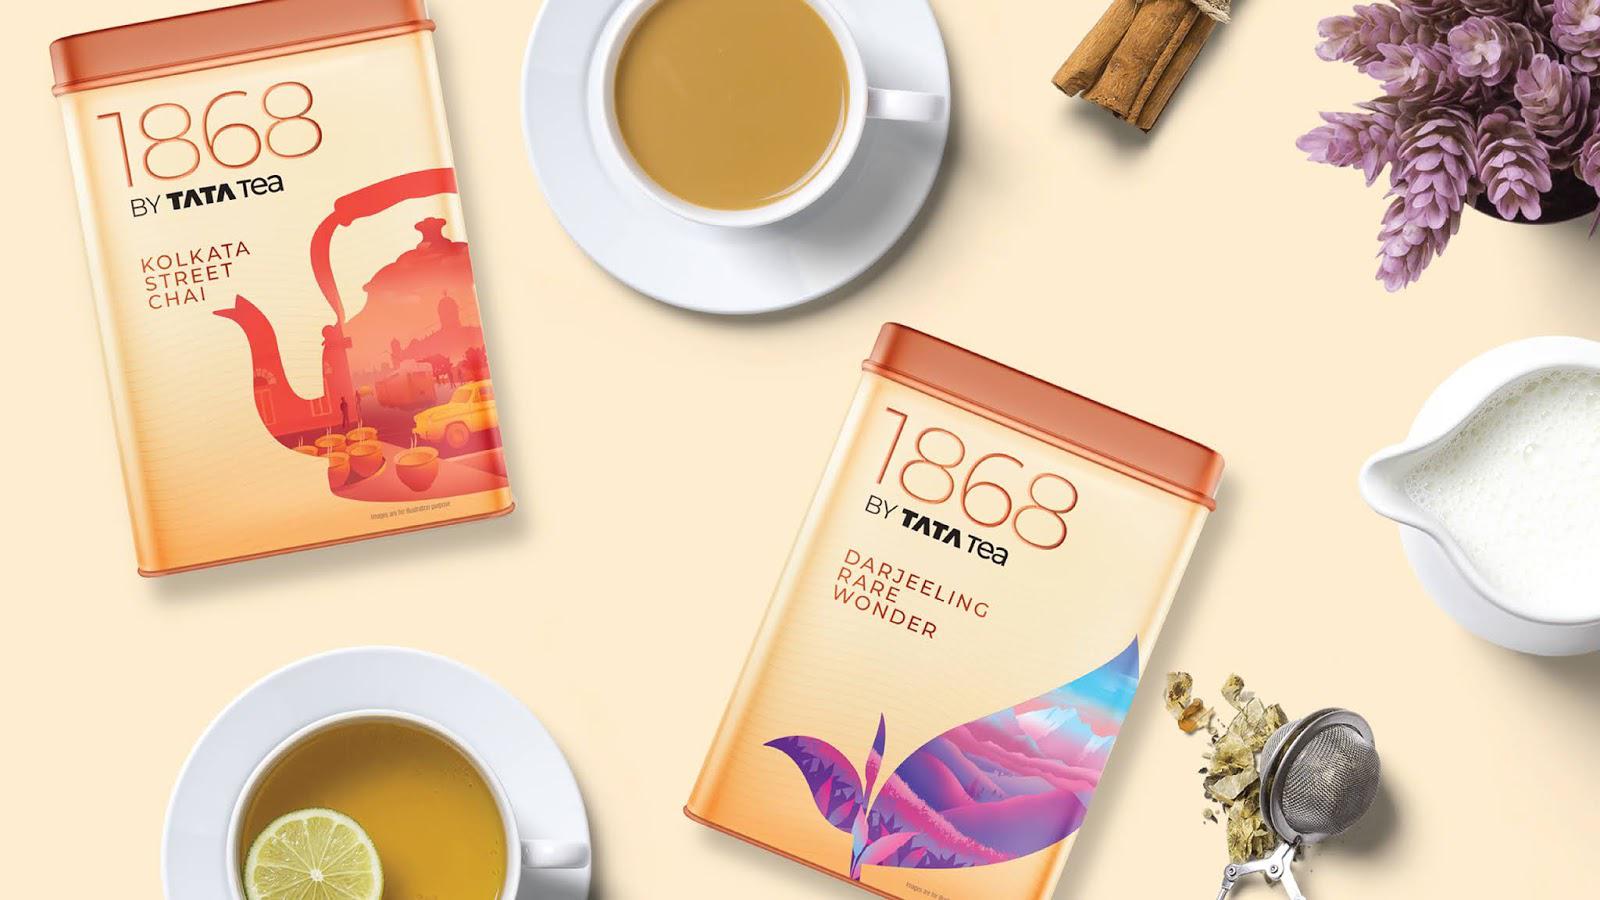 印度茶叶包装设计 印度茶叶包装设计哪家好 年轻人喜欢的茶叶包装设计 第2张